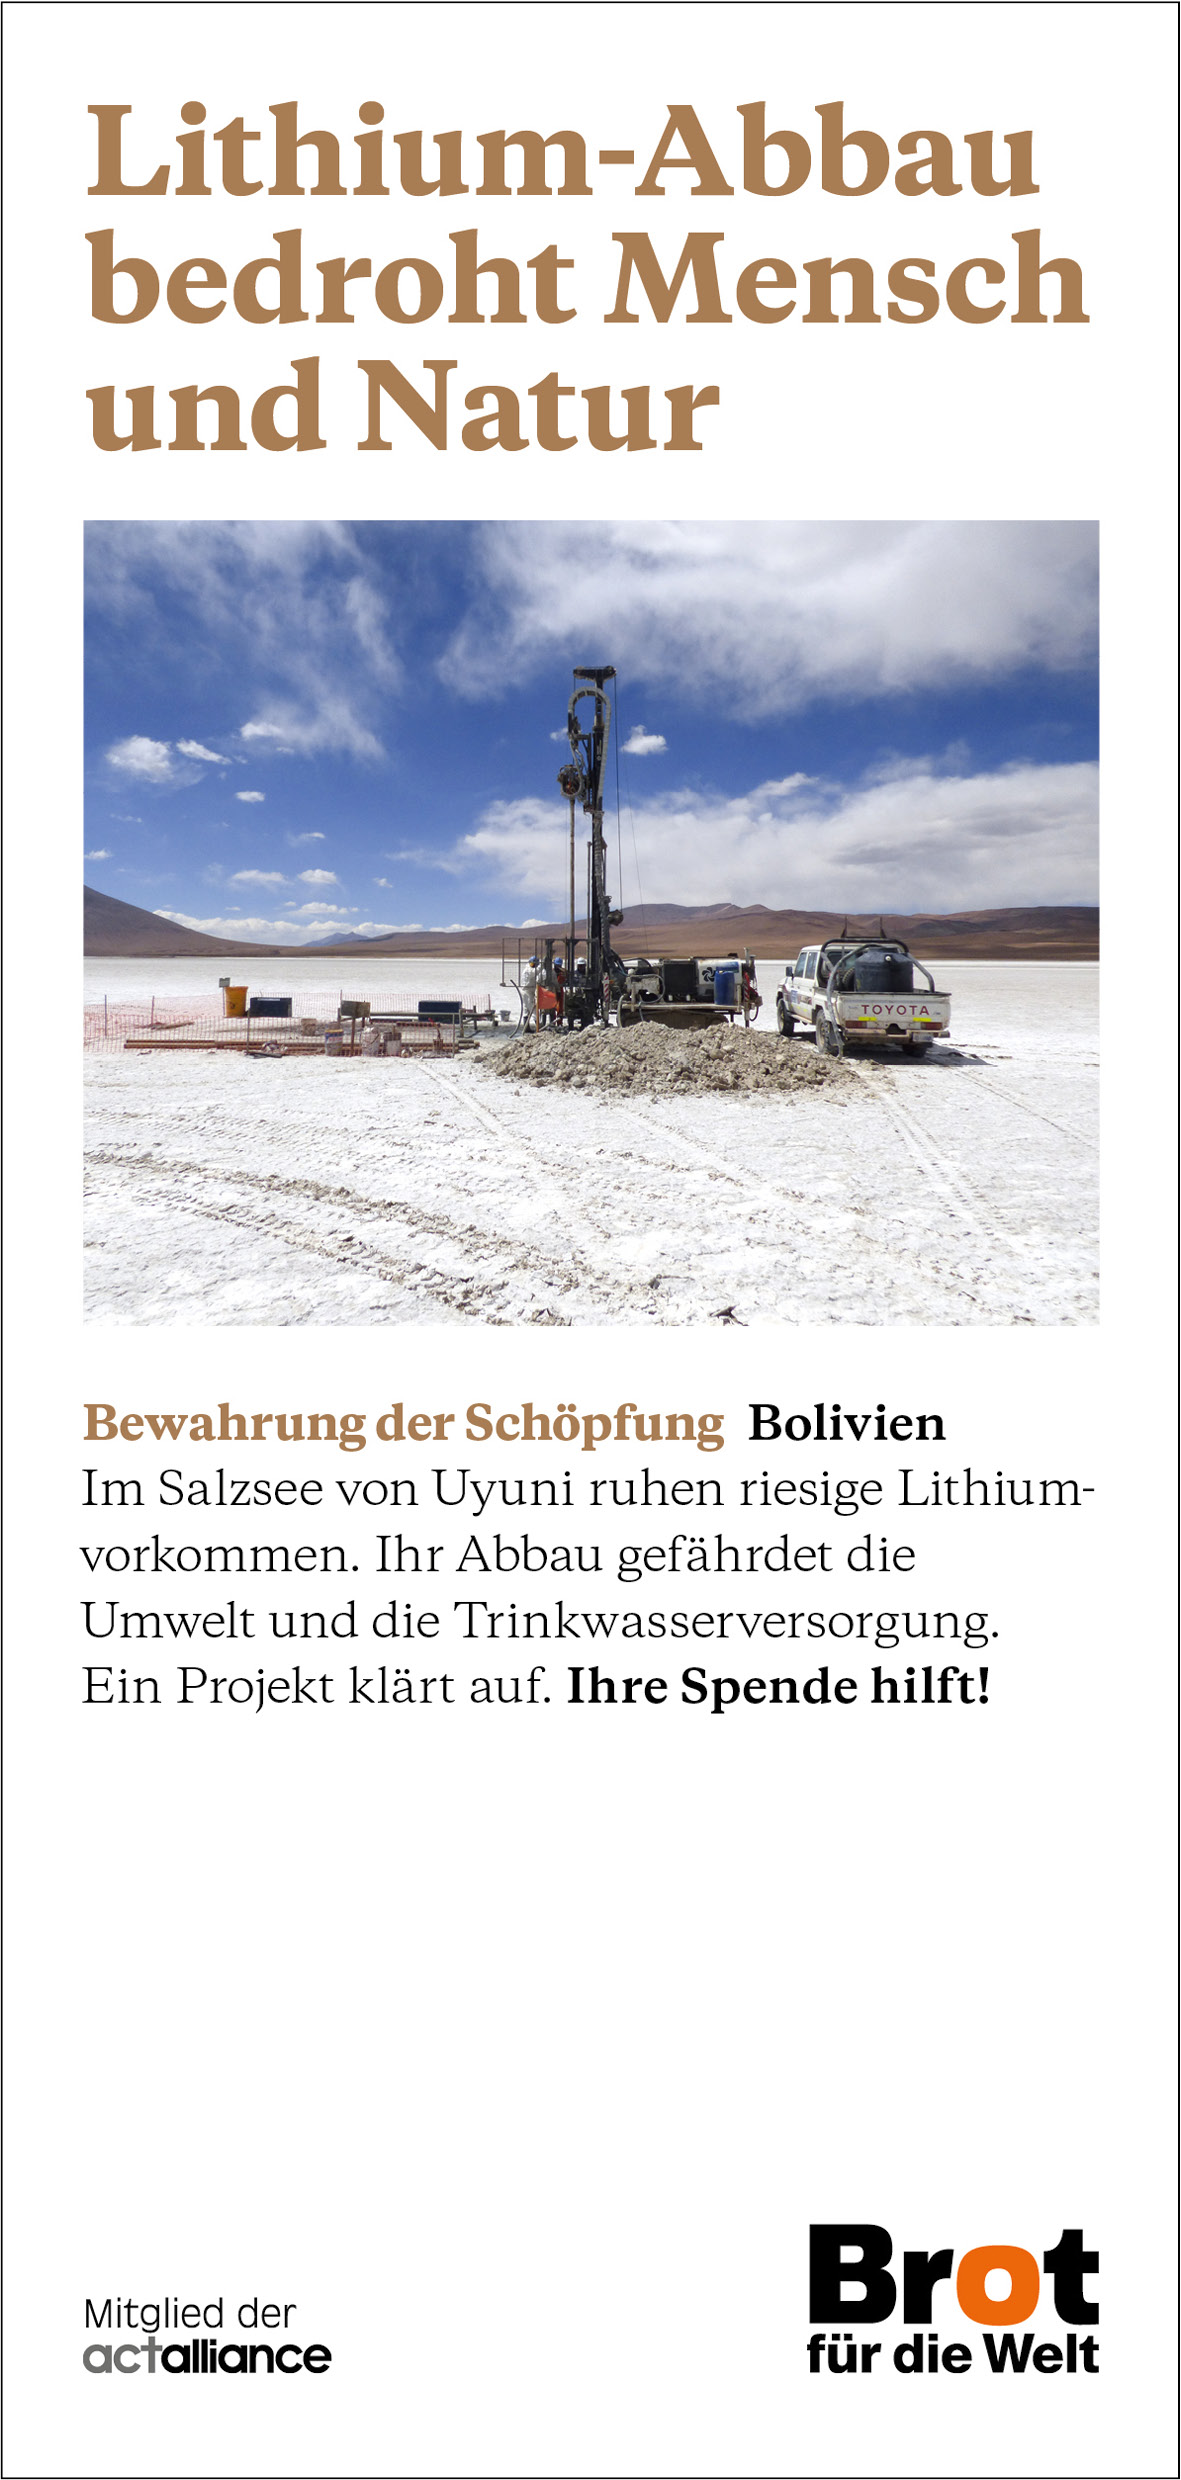 Bolivien - Lithium-Abbau bedroht Mensch und Natur (Faltblatt Schöpfung)